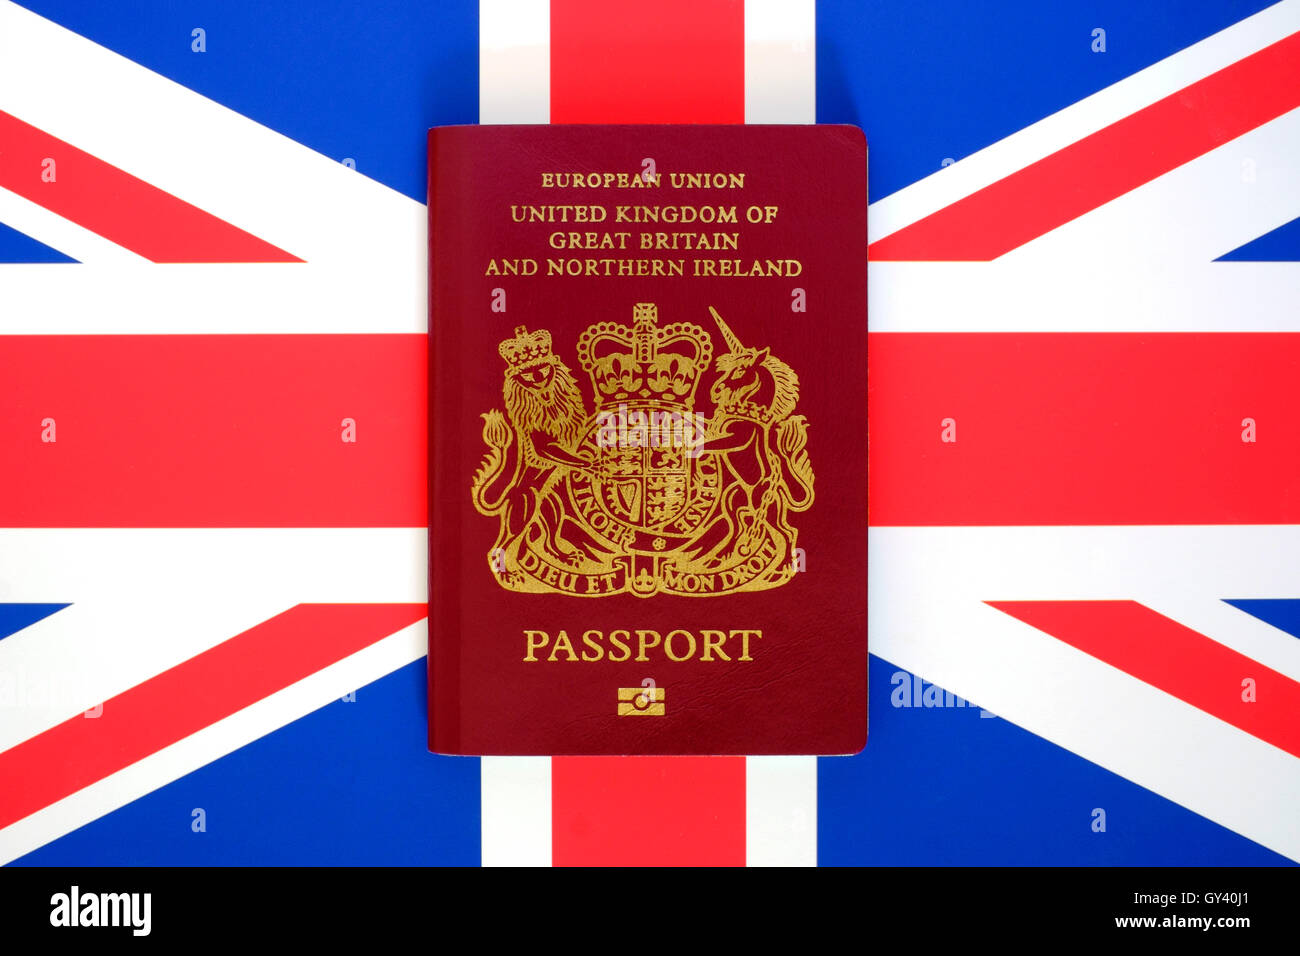 united kingdom european union burgundy passport on a uk flag background Stock Photo